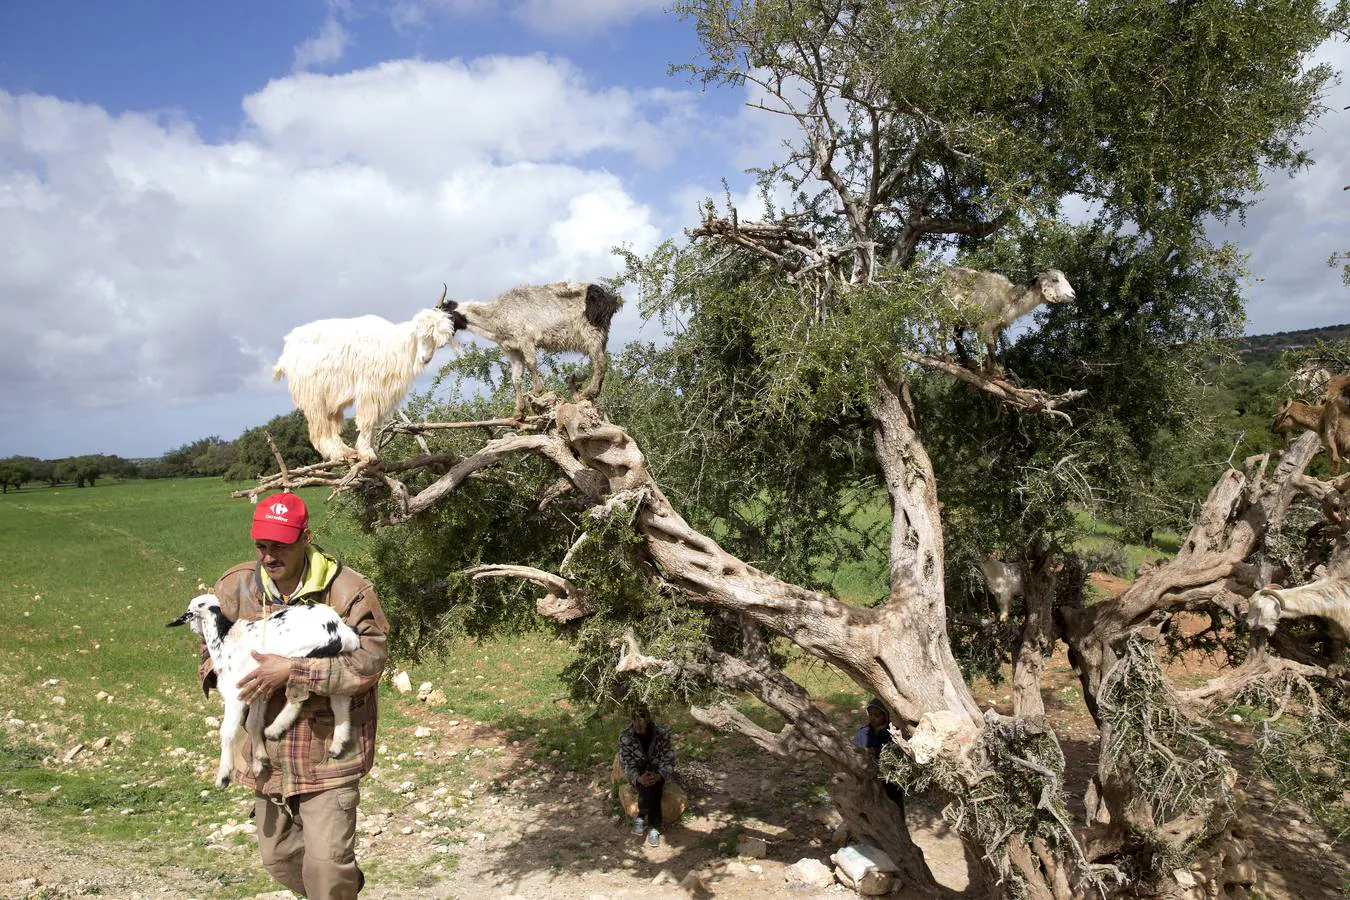 Cabras subidas al árbol de argan. Desde las ramas mordisquean los frutos y escupen las pepitas, que luego se recogen para elaborar el famoso aceite.